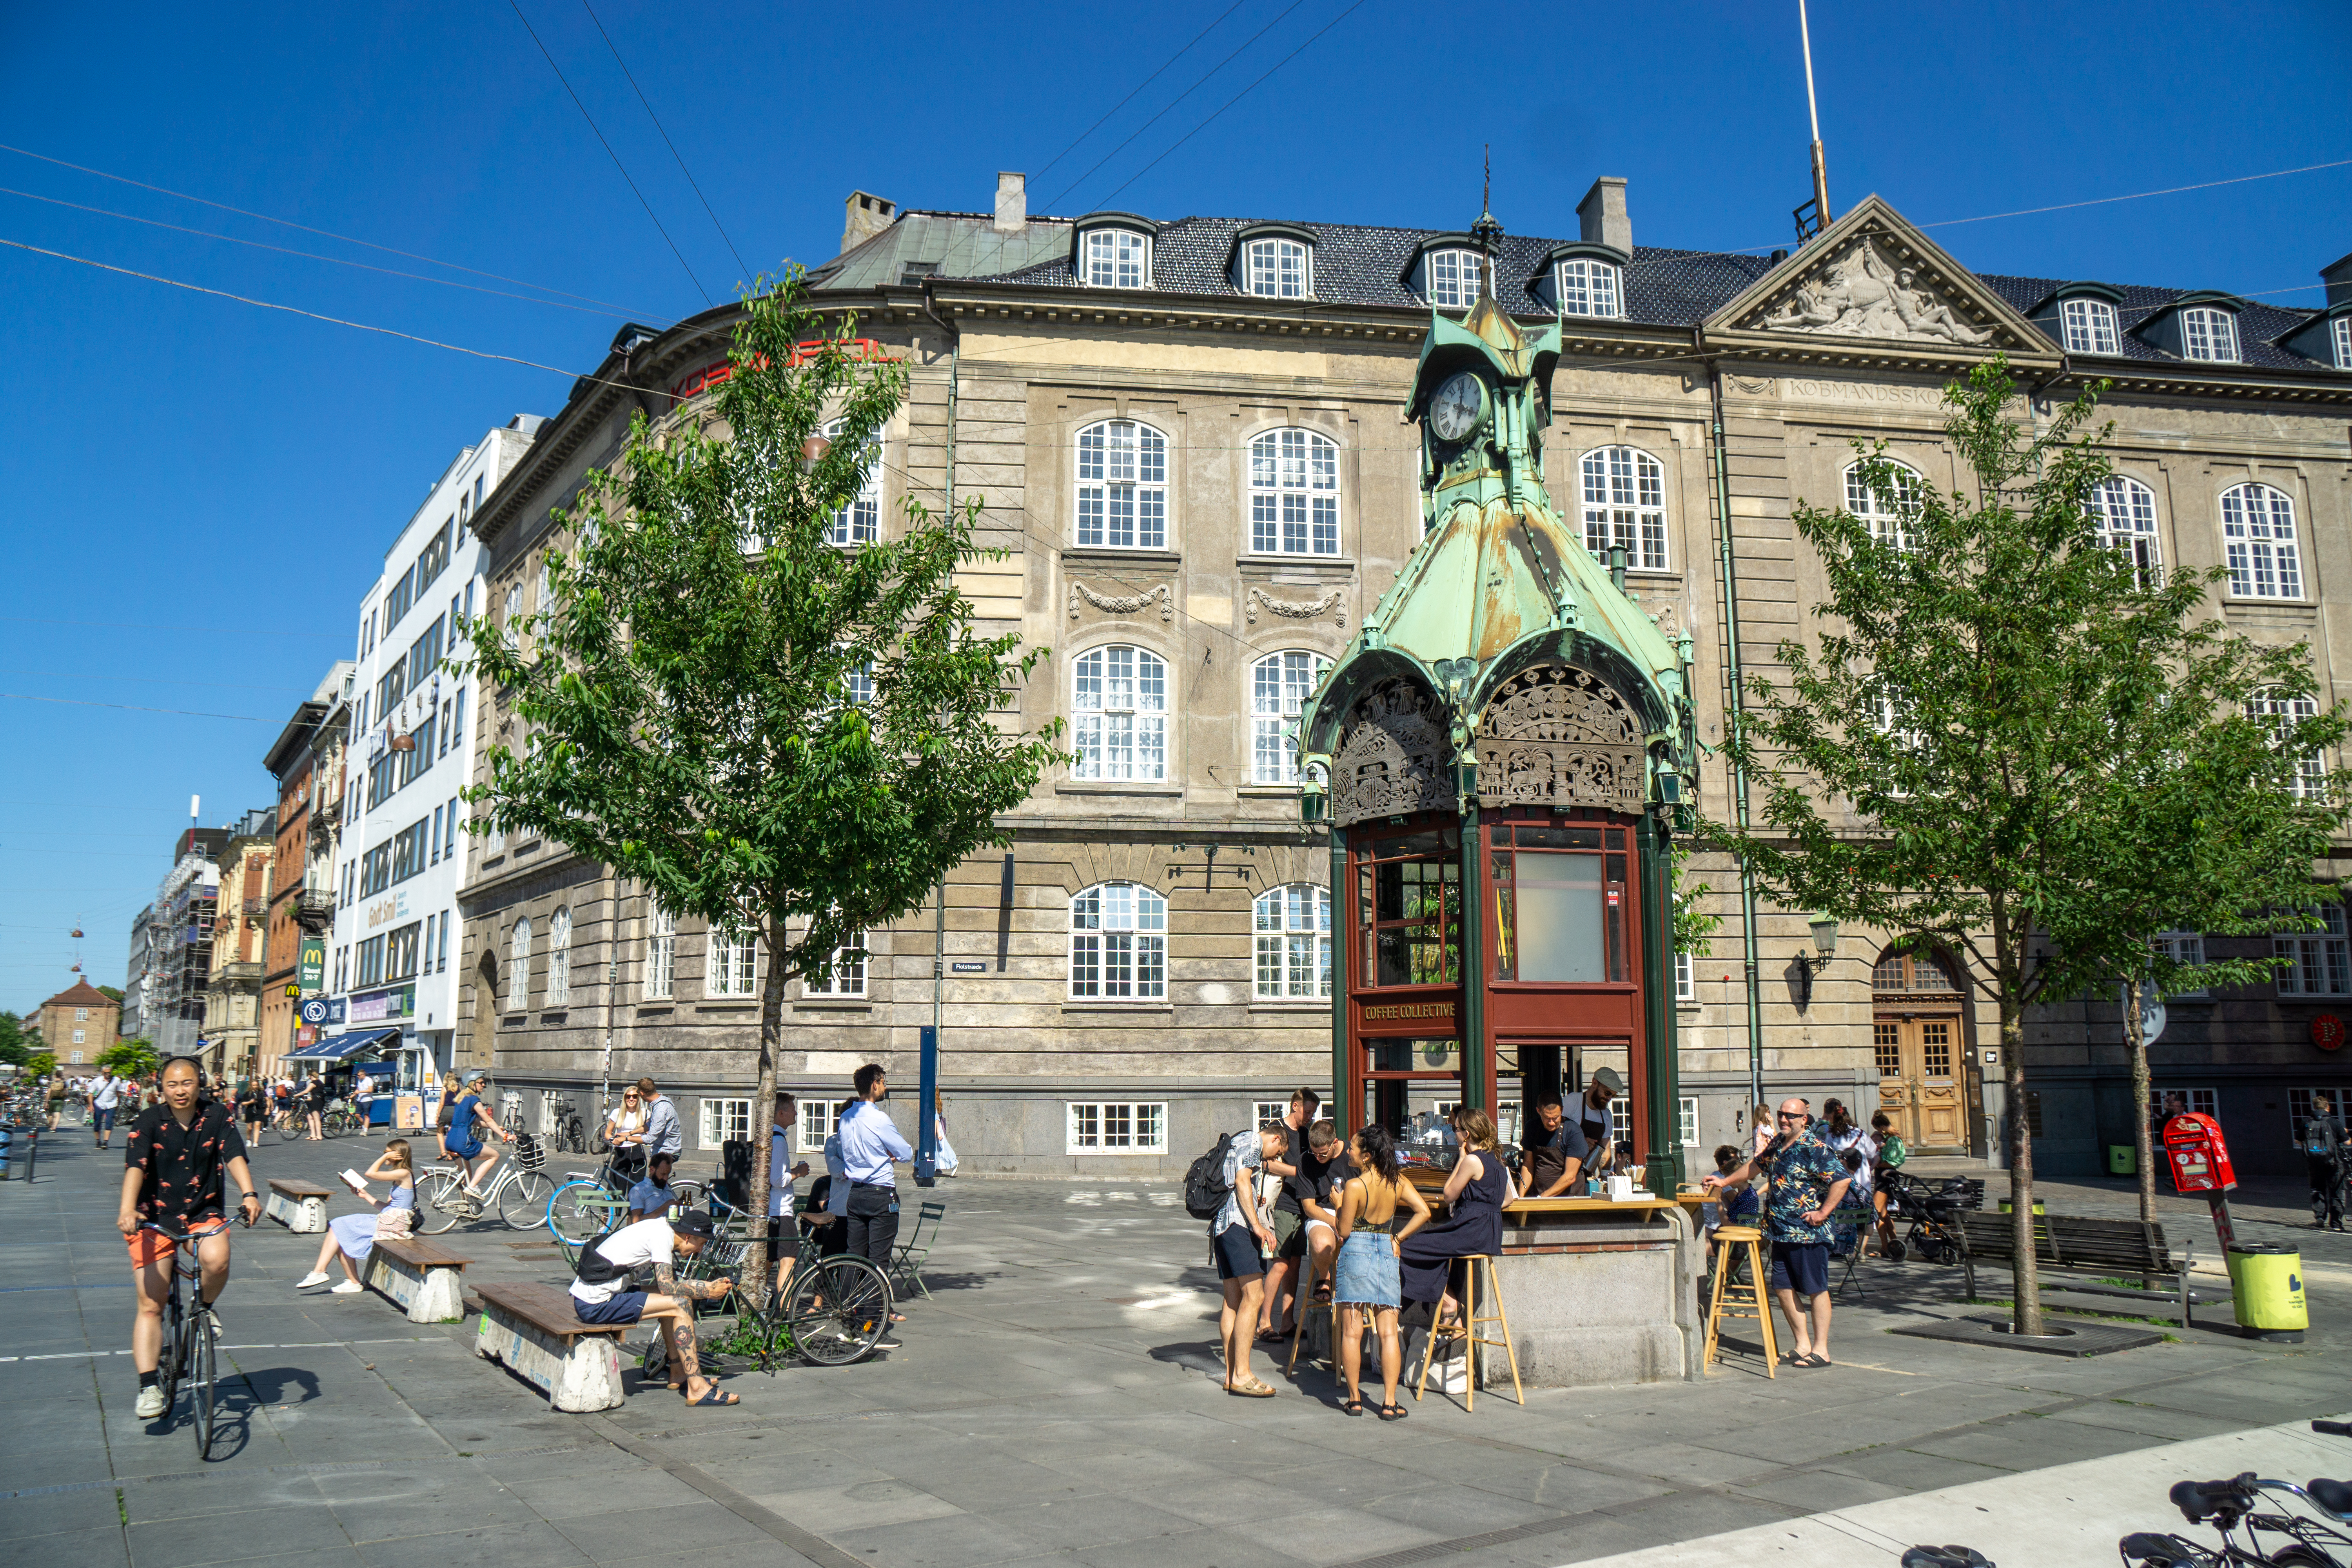 The corner of Nørre Voldgade and Fiolstræde